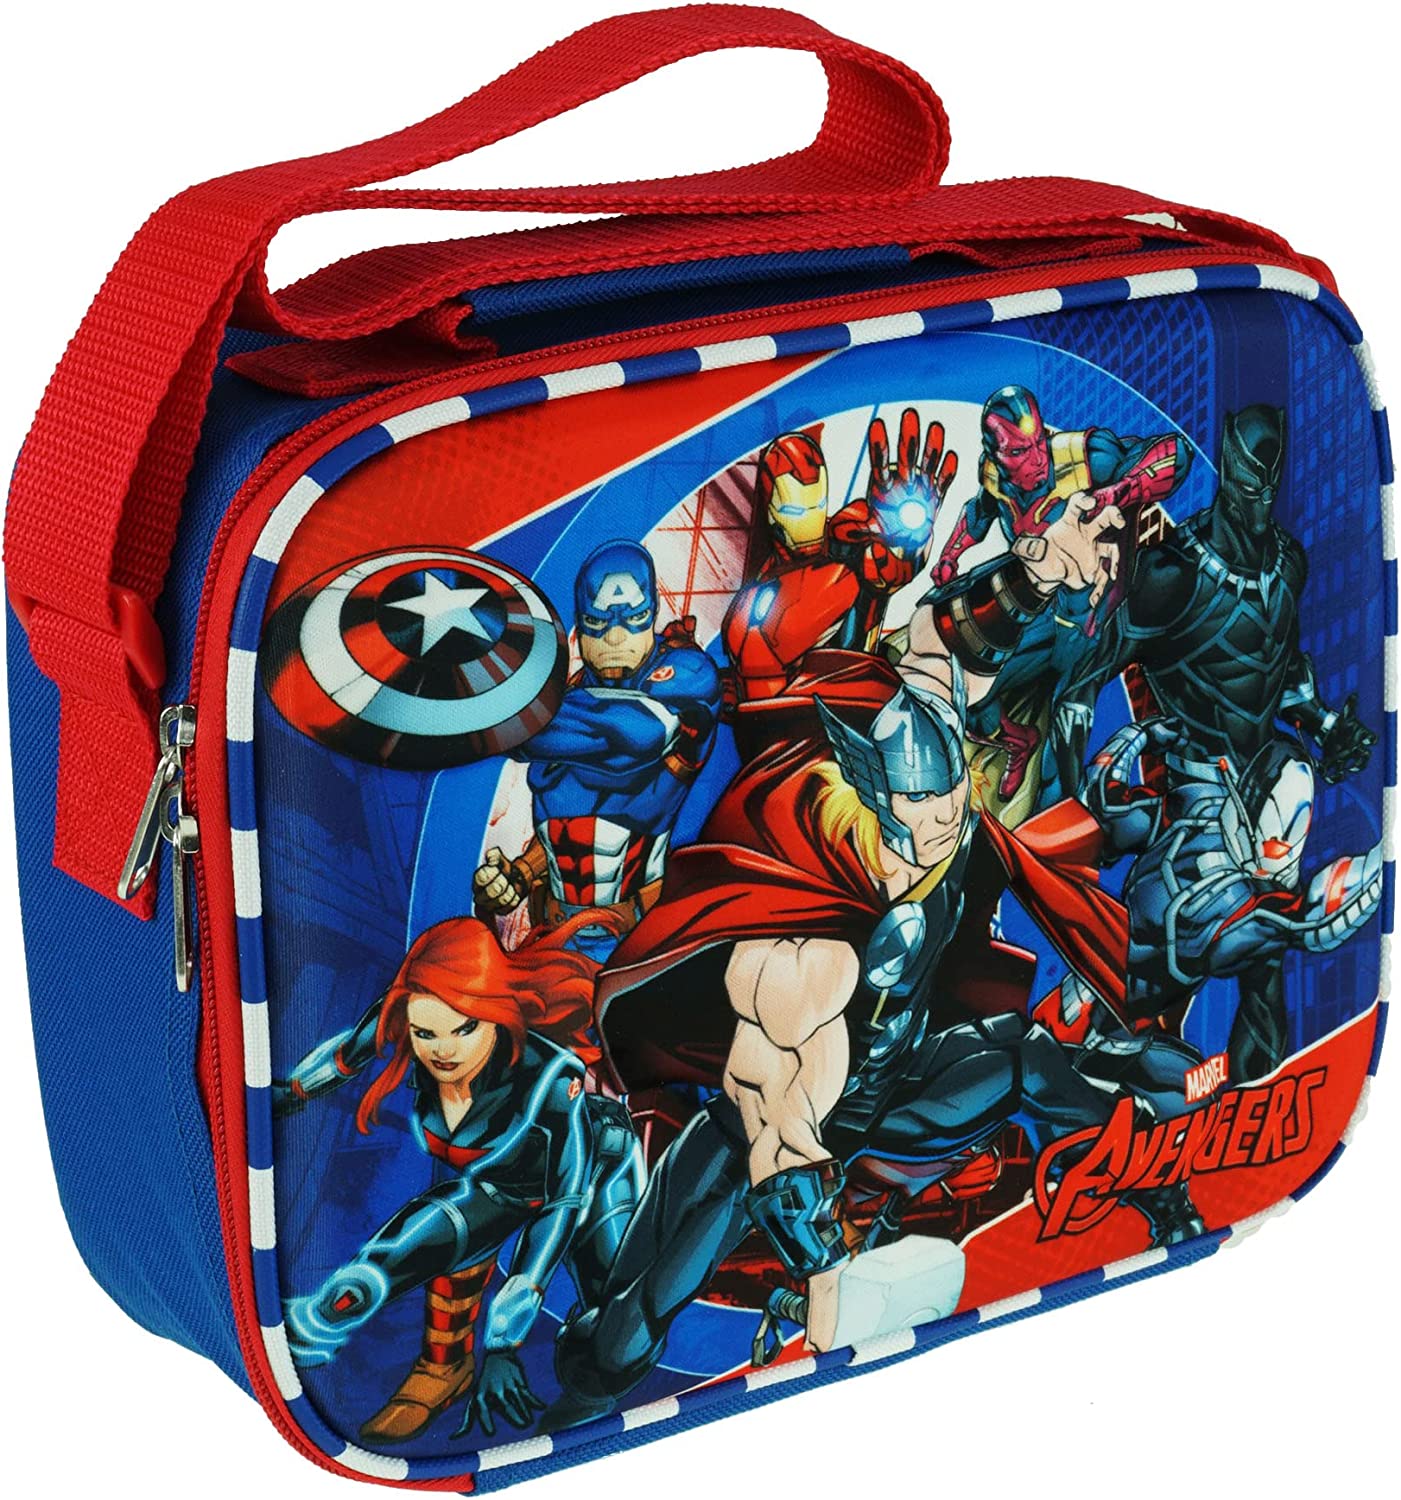 Marvel - Avengers - 3D EVA Molded Lunch Box